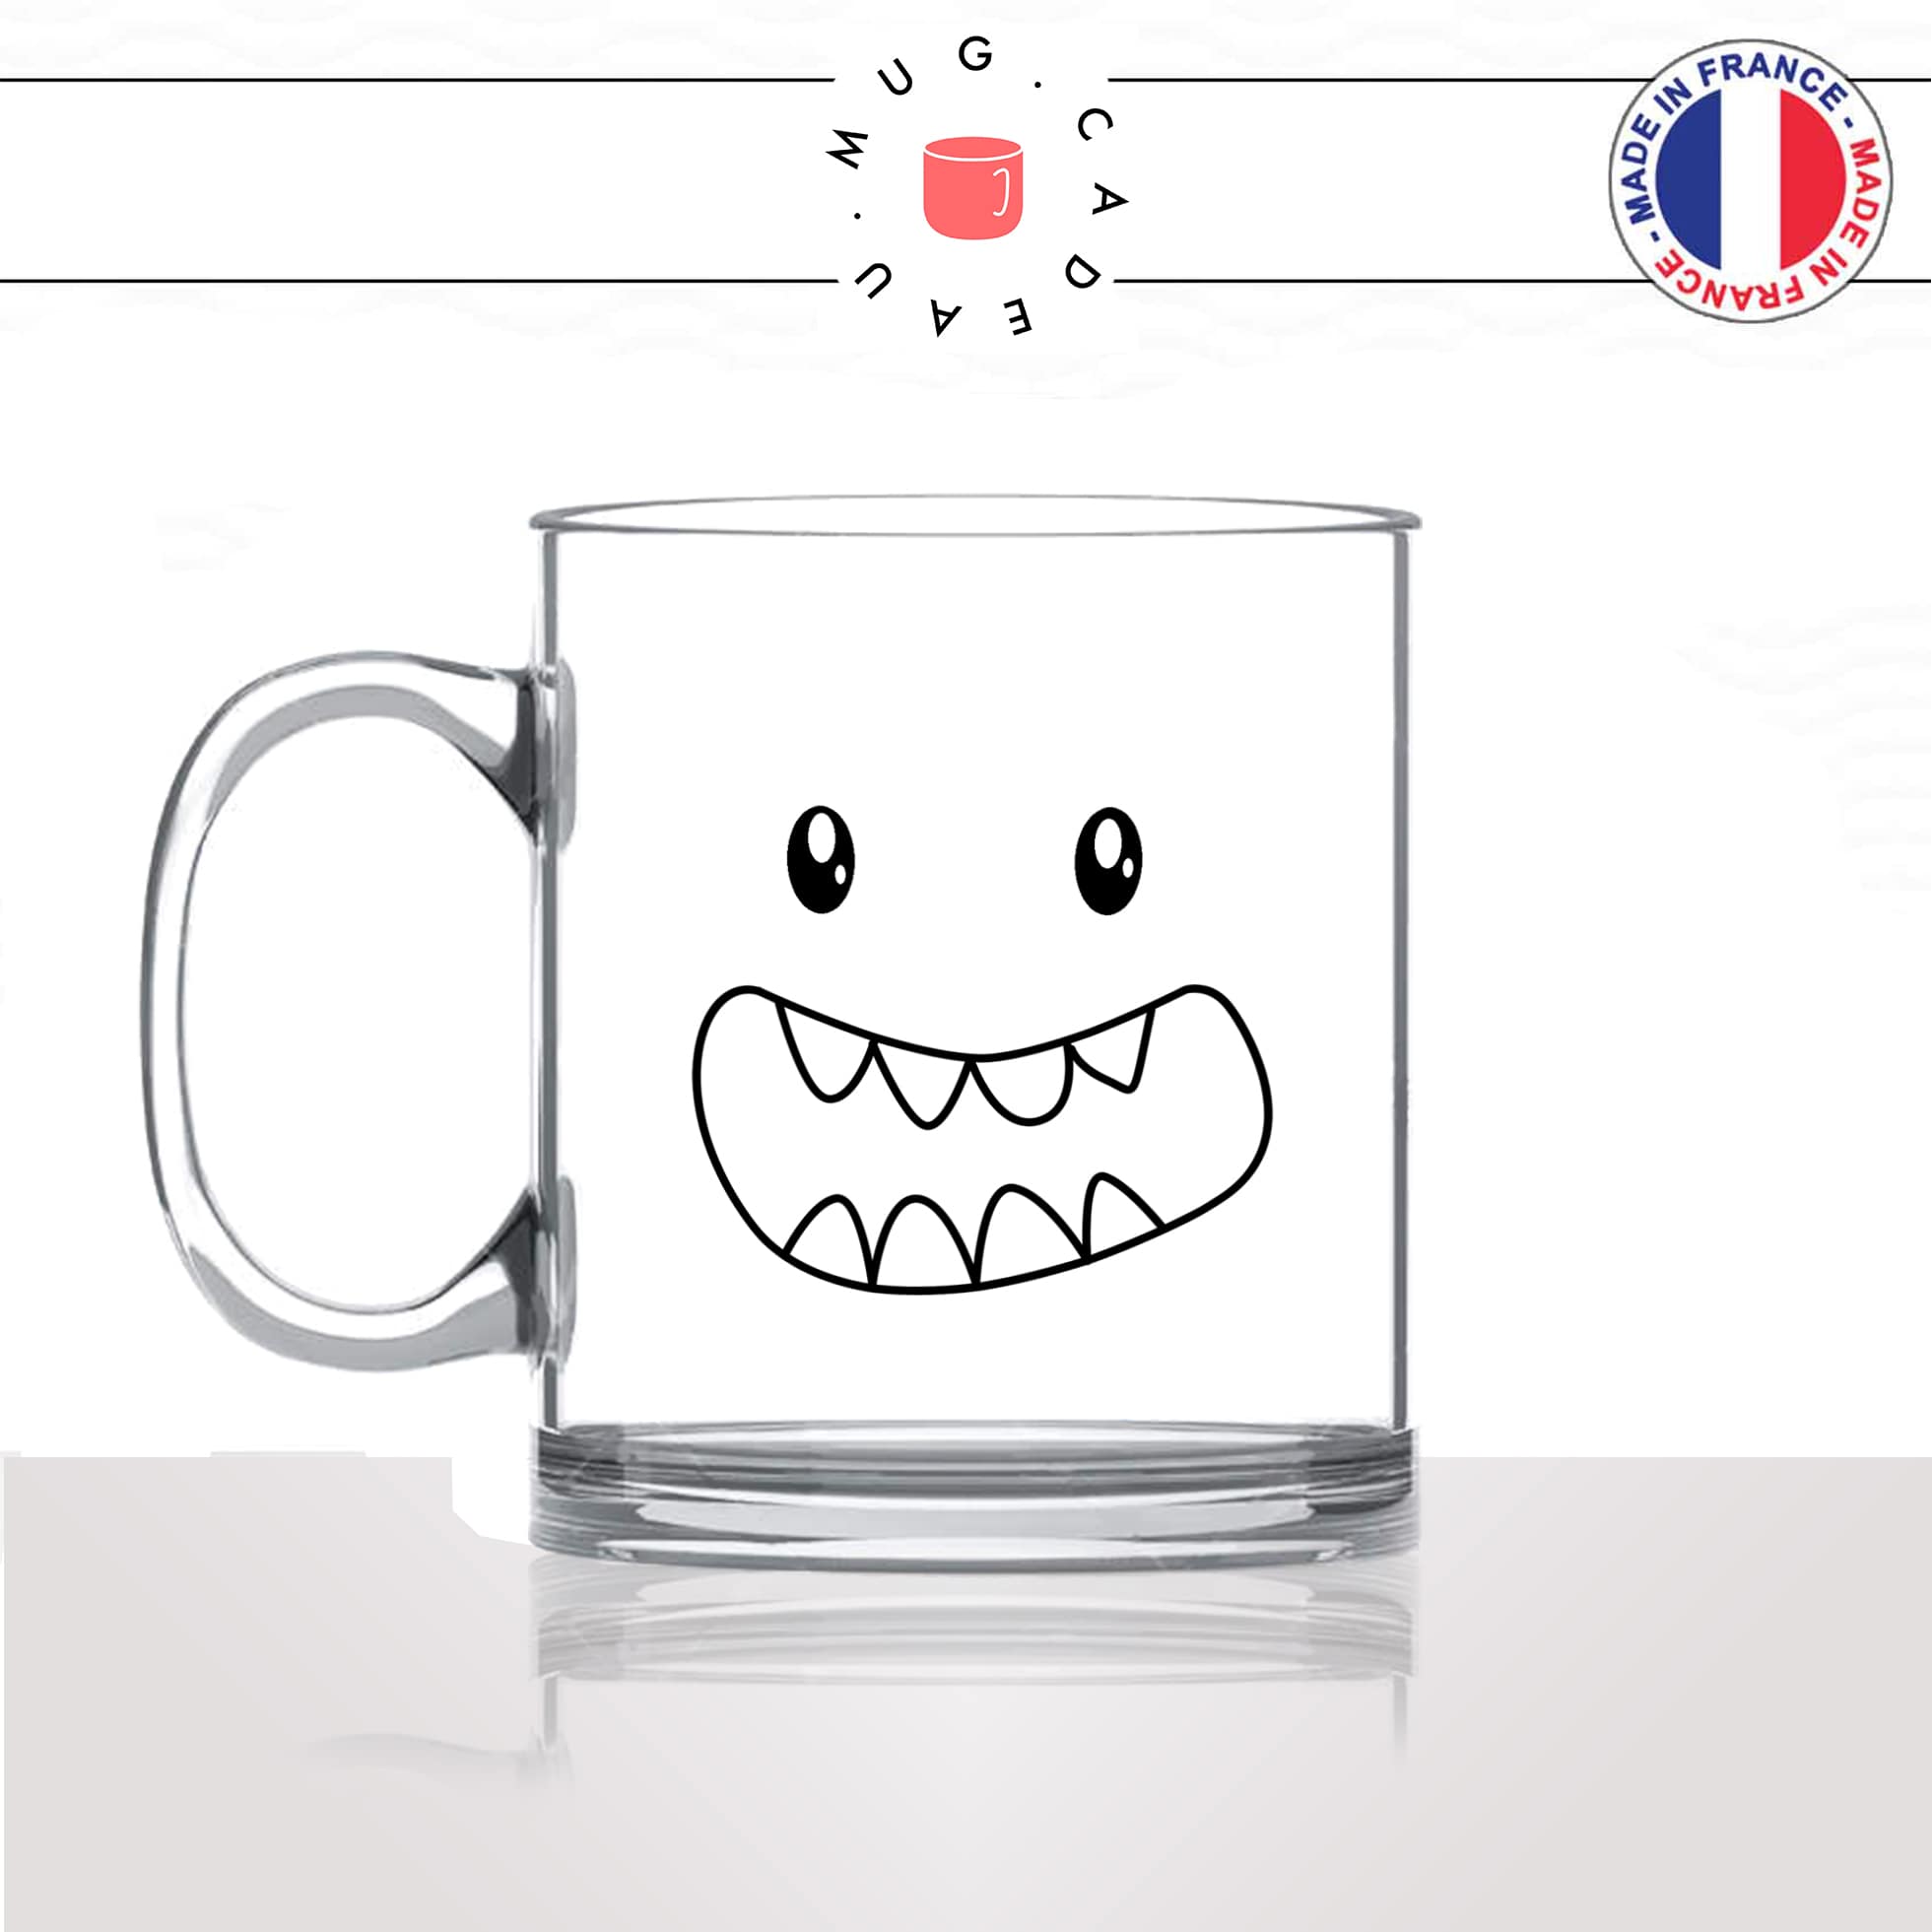 tasse-mug-en-verre-transparent-glass-monstre-gentil-dents-enfant-kawaii-dessin-mignon-animal-noir-fun-café-thé-idée-cadeau-original-personnalisé-min